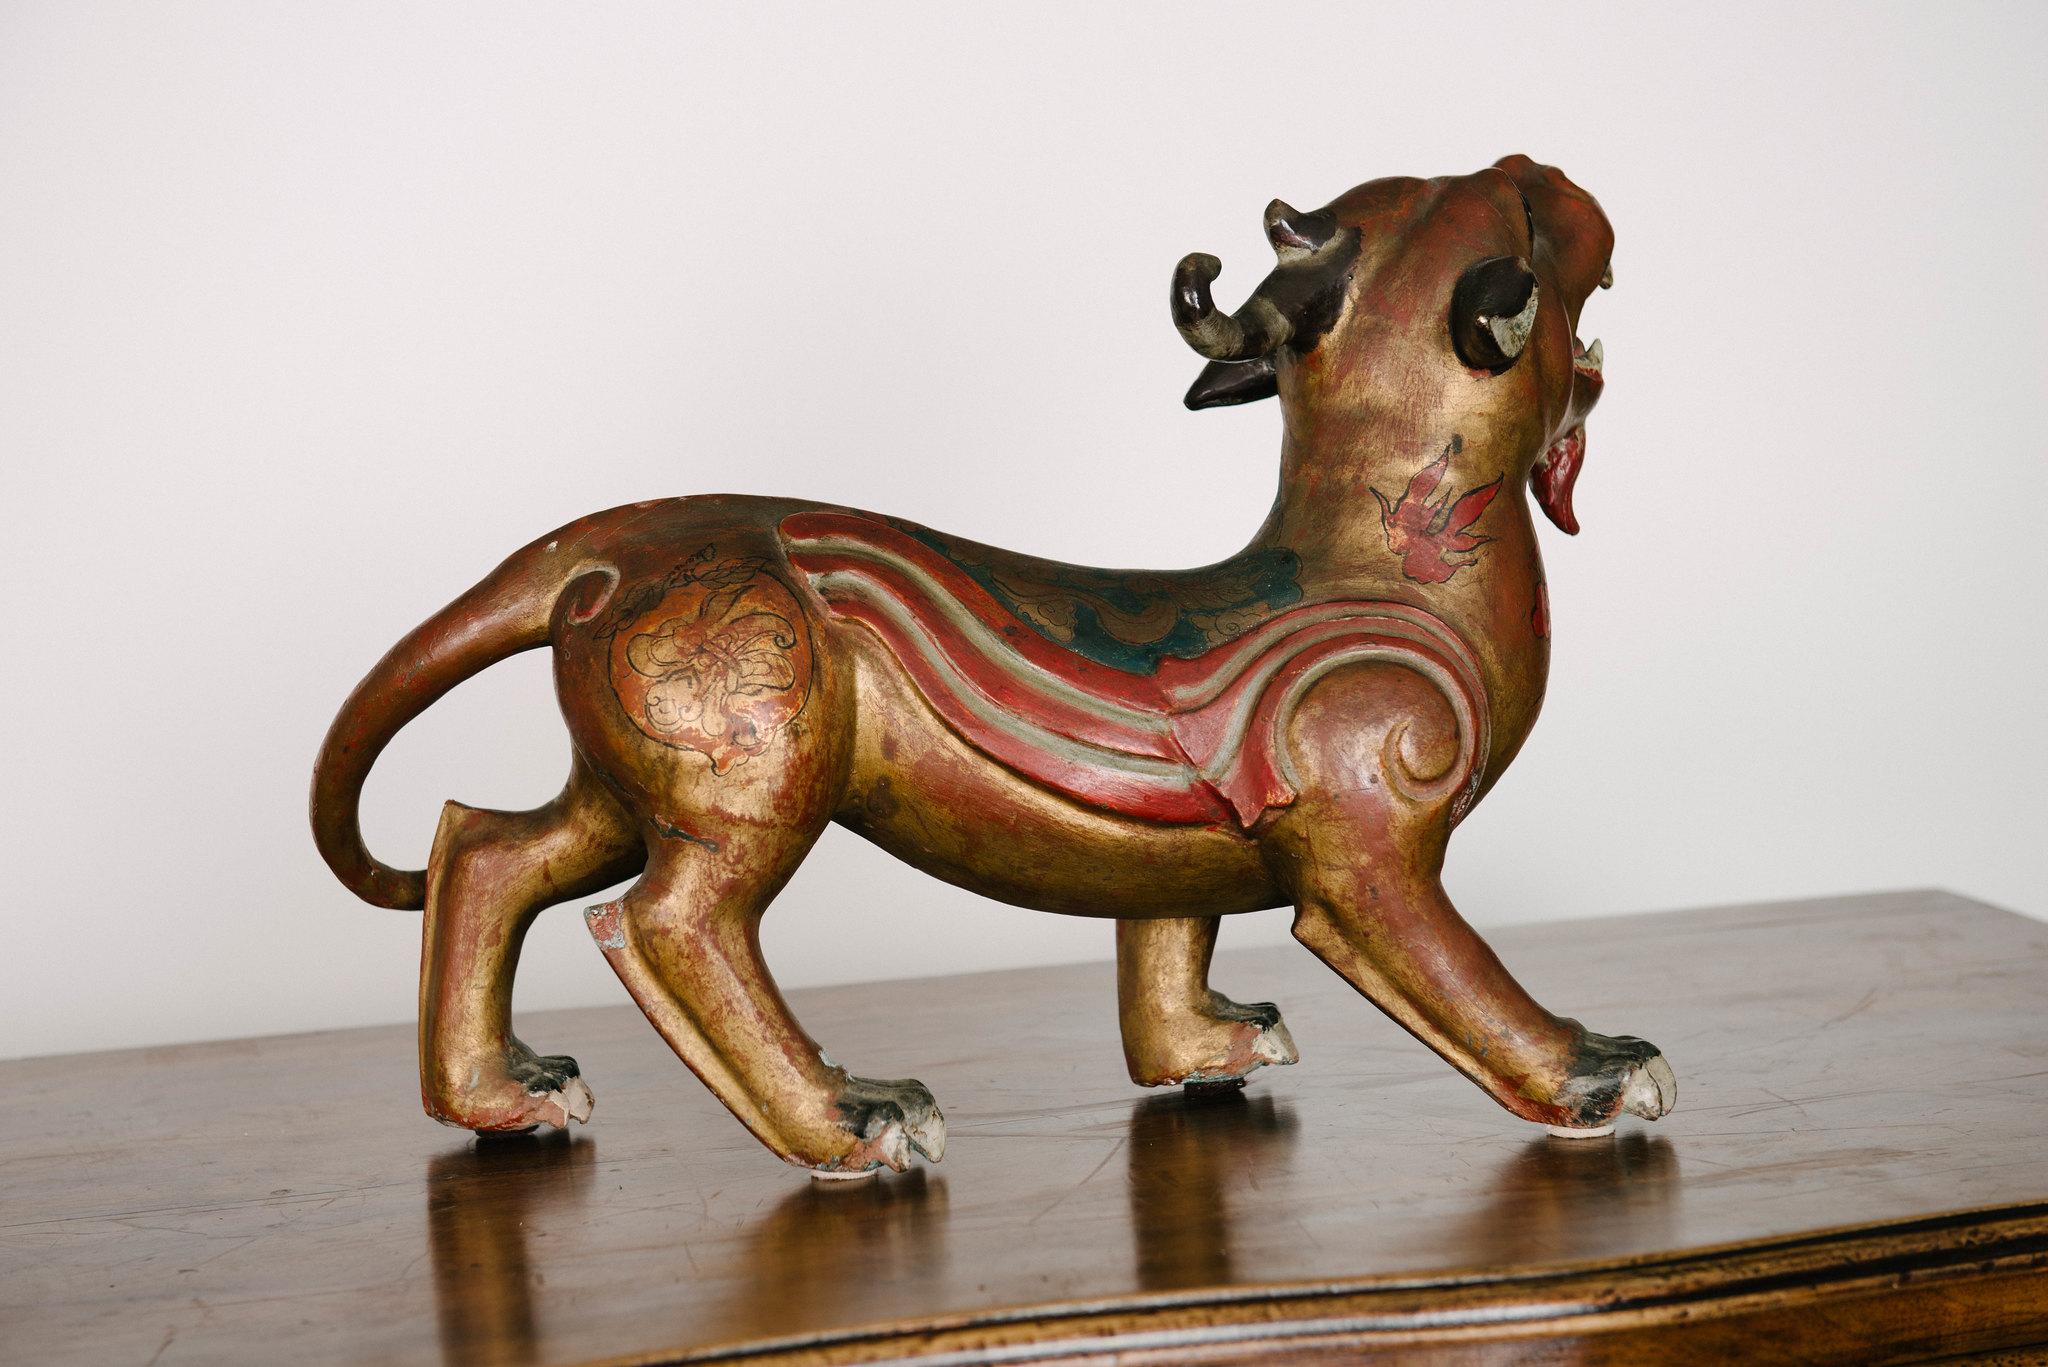 Paar chinesische Pi Xiu aus patinierter Bronze aus dem späten 19. Jahrhundert Traditionell handelt es sich um ein glücksverheißendes chinesisches mythisches hybrides Wesen, das mystische Kräfte besitzt, die in der Lage sind, Reichtum einzufangen und